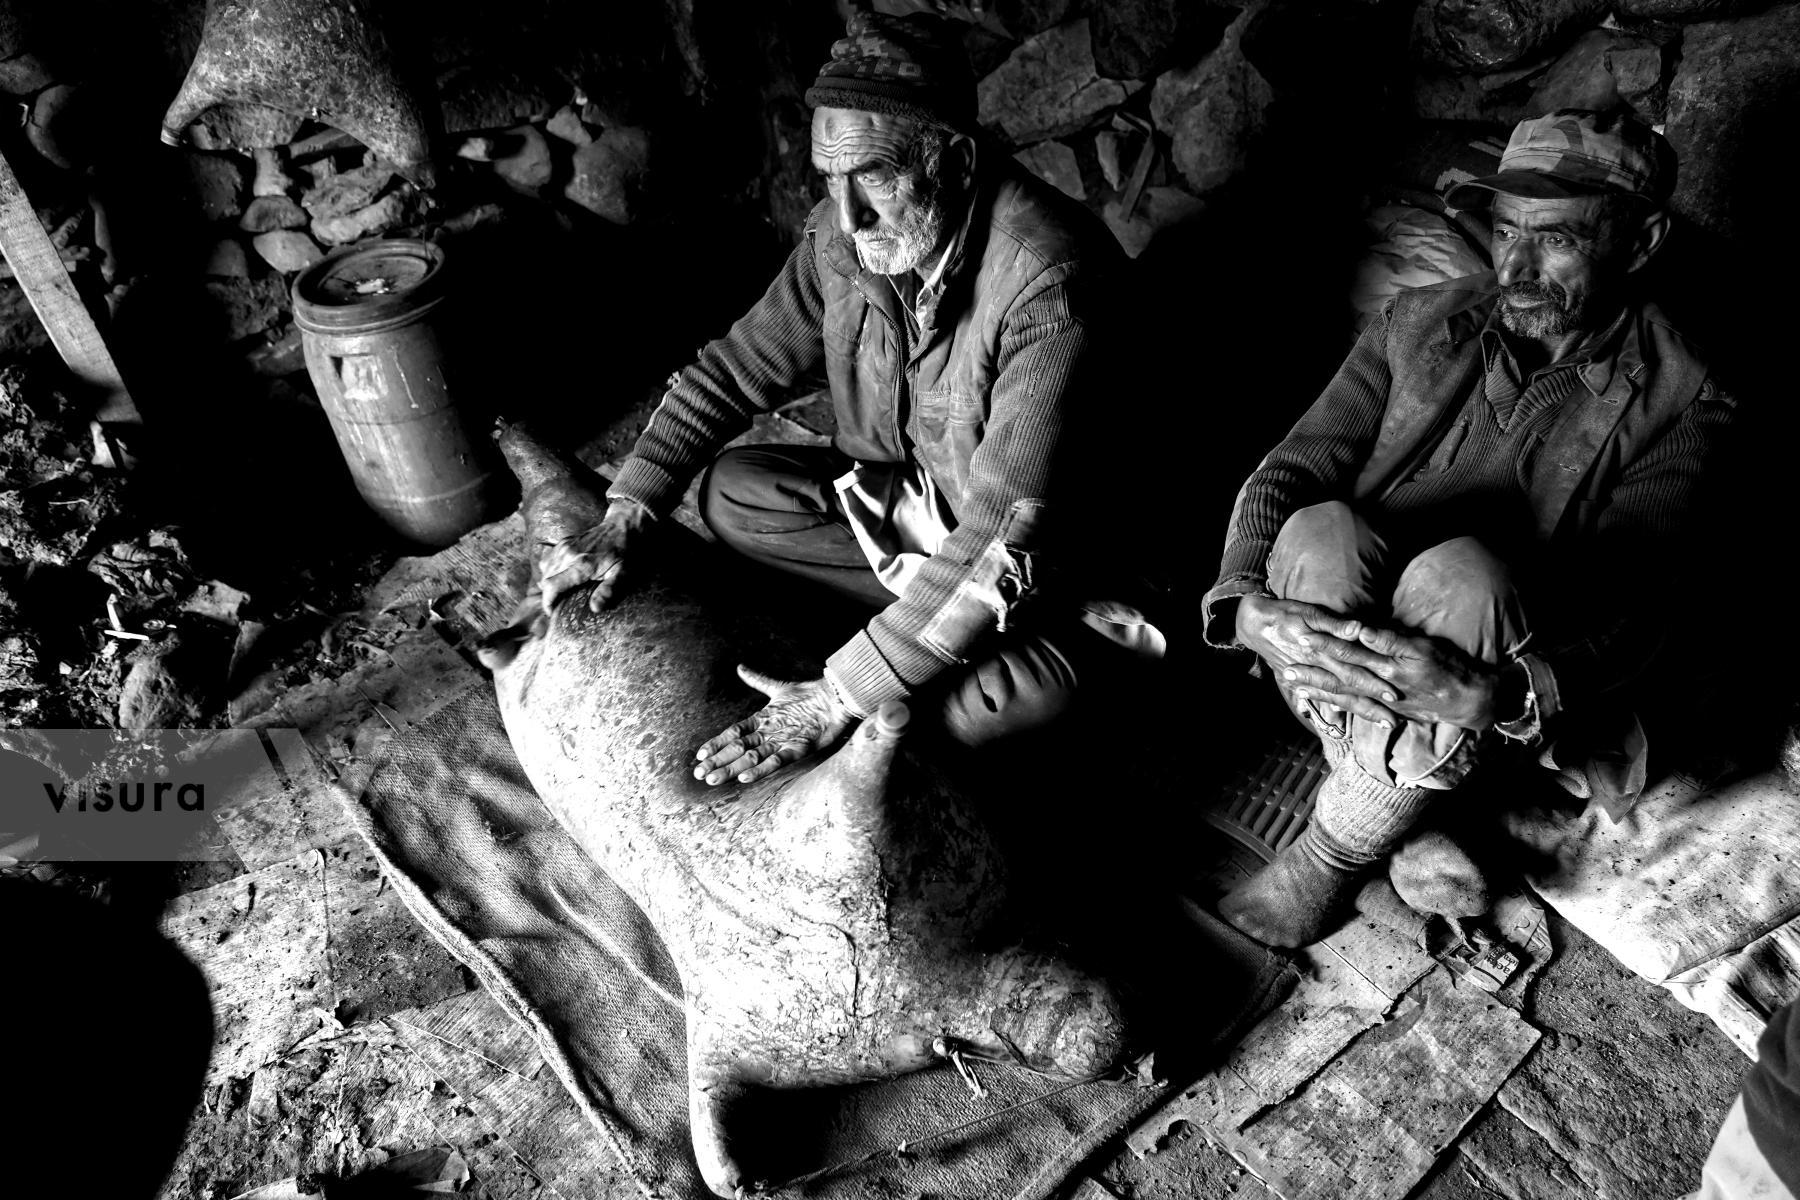 Purchase Shepherd making butter - Pakistan by Andrea Gabrieli